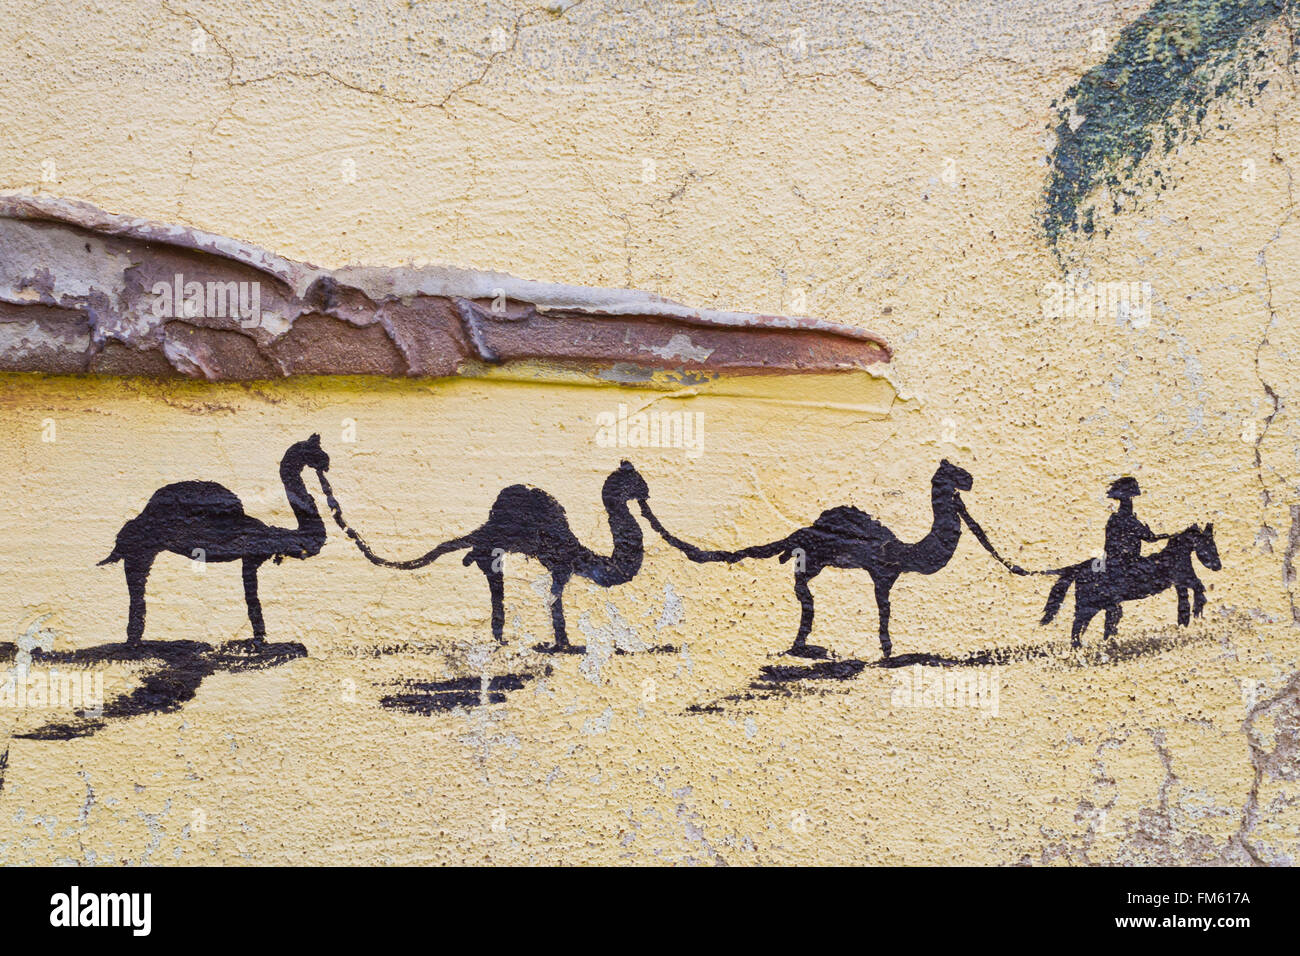 KEMER, Turchia - 22 Maggio 2013: immagine di parete di un cammello carovana. Cammelli - le navi del deserto Foto Stock